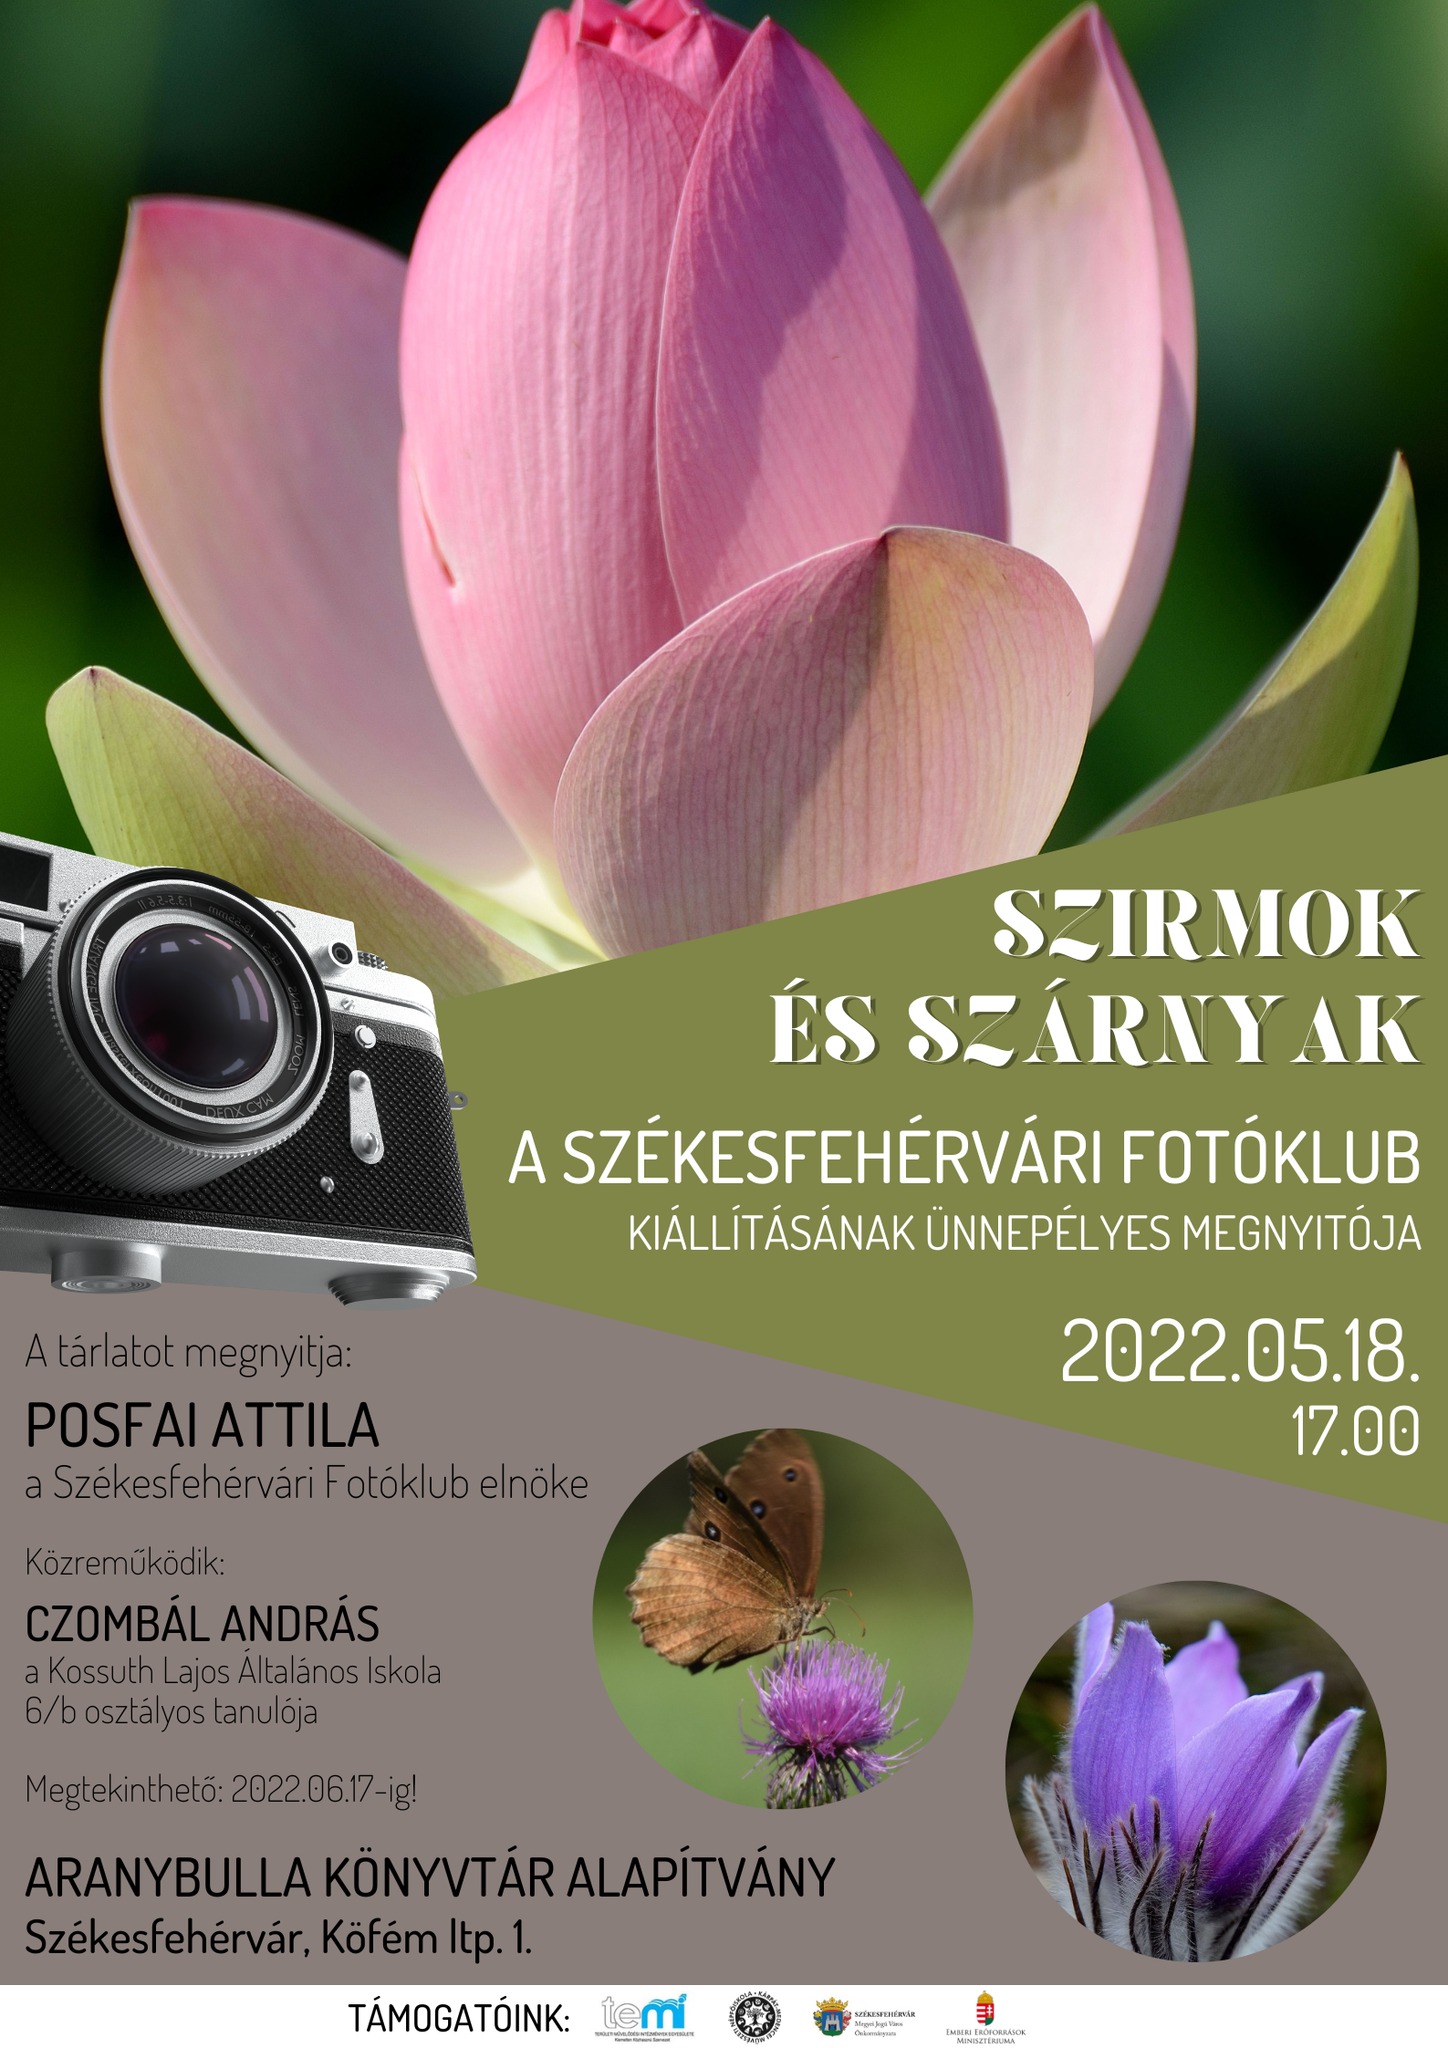 Szirmok és szárnyak – kiállítás nyílik a Székesfehérvári Fotóklub munkáiból az Aranybulla Könyvtárban